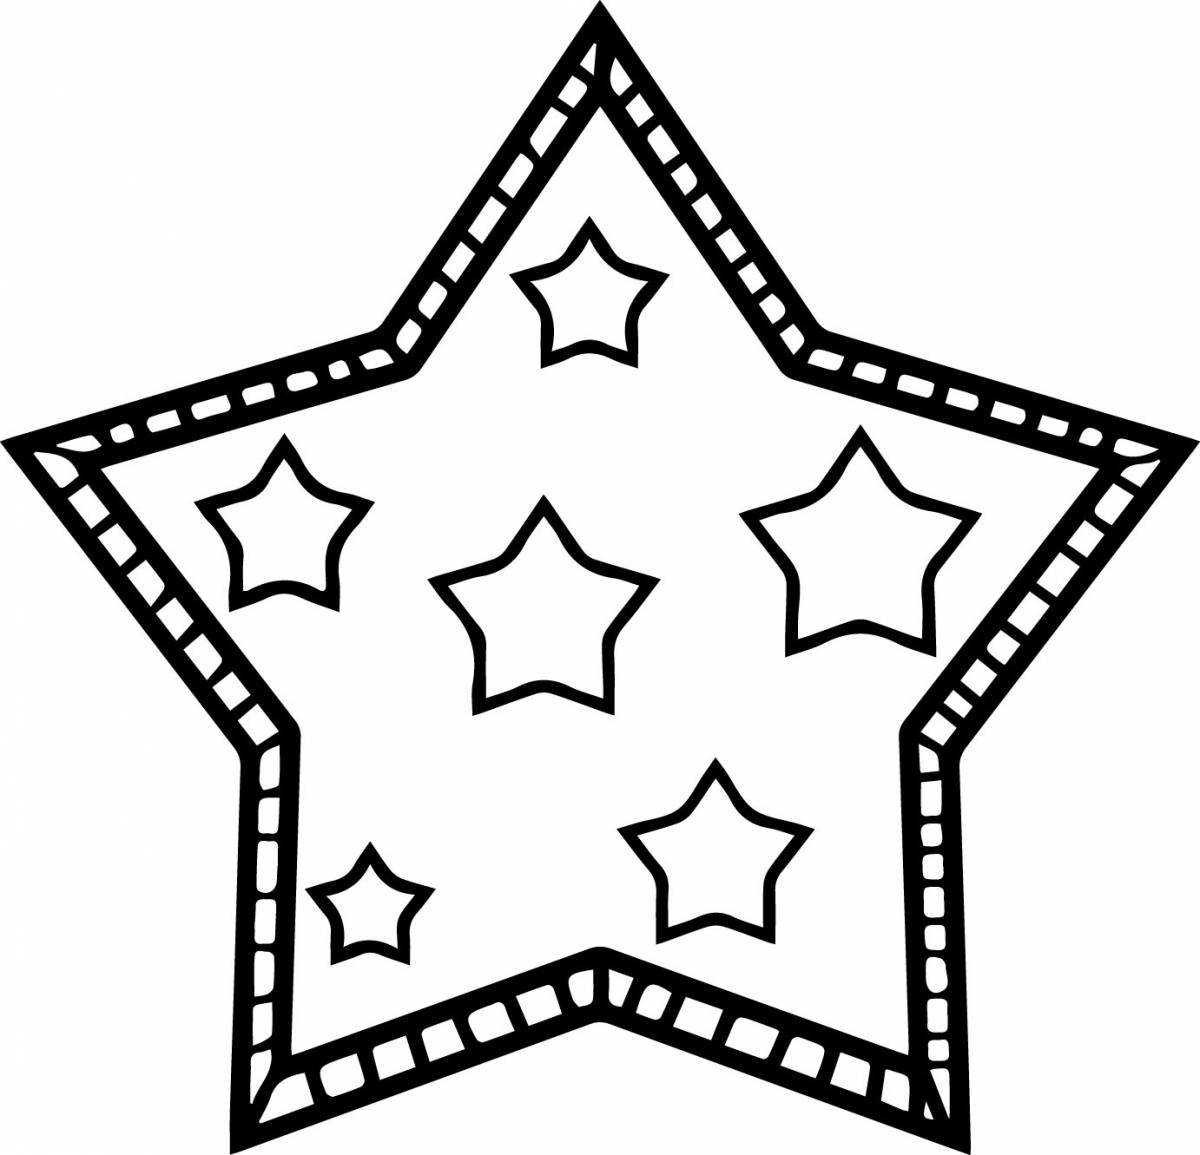 Великолепная звездная раскраска для детей